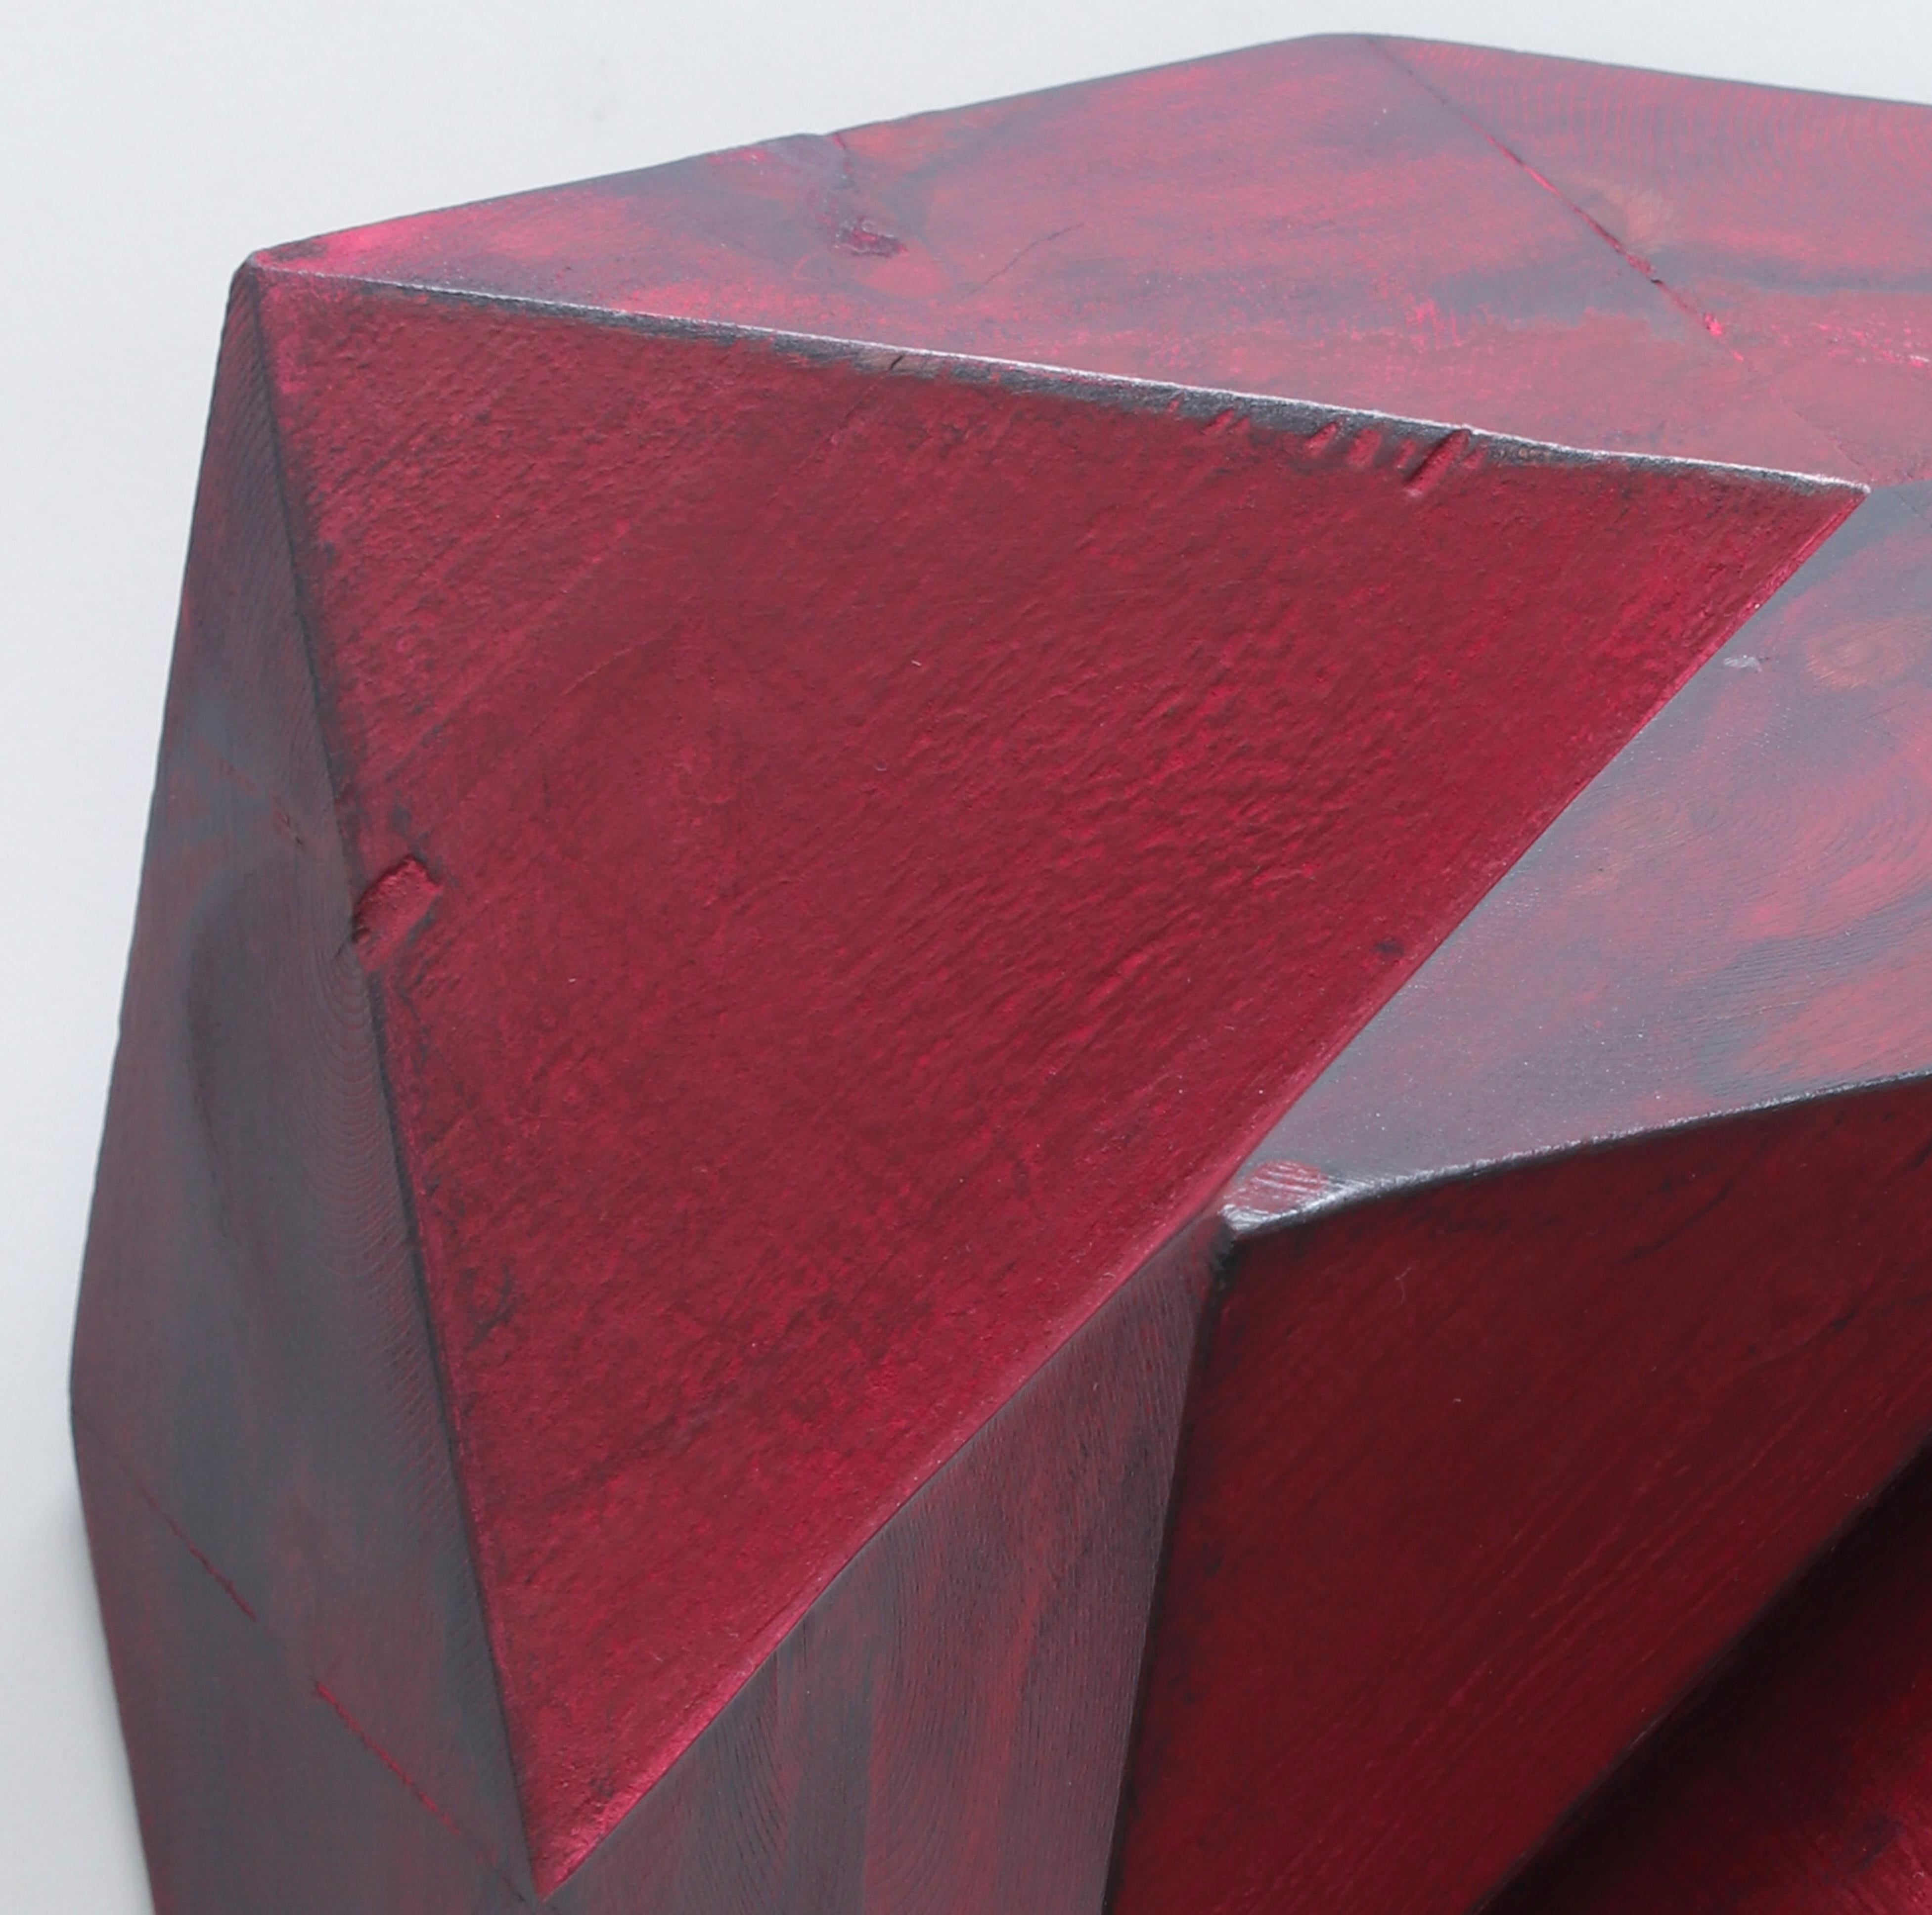 Red Flap - Sculpture by Peter Millett